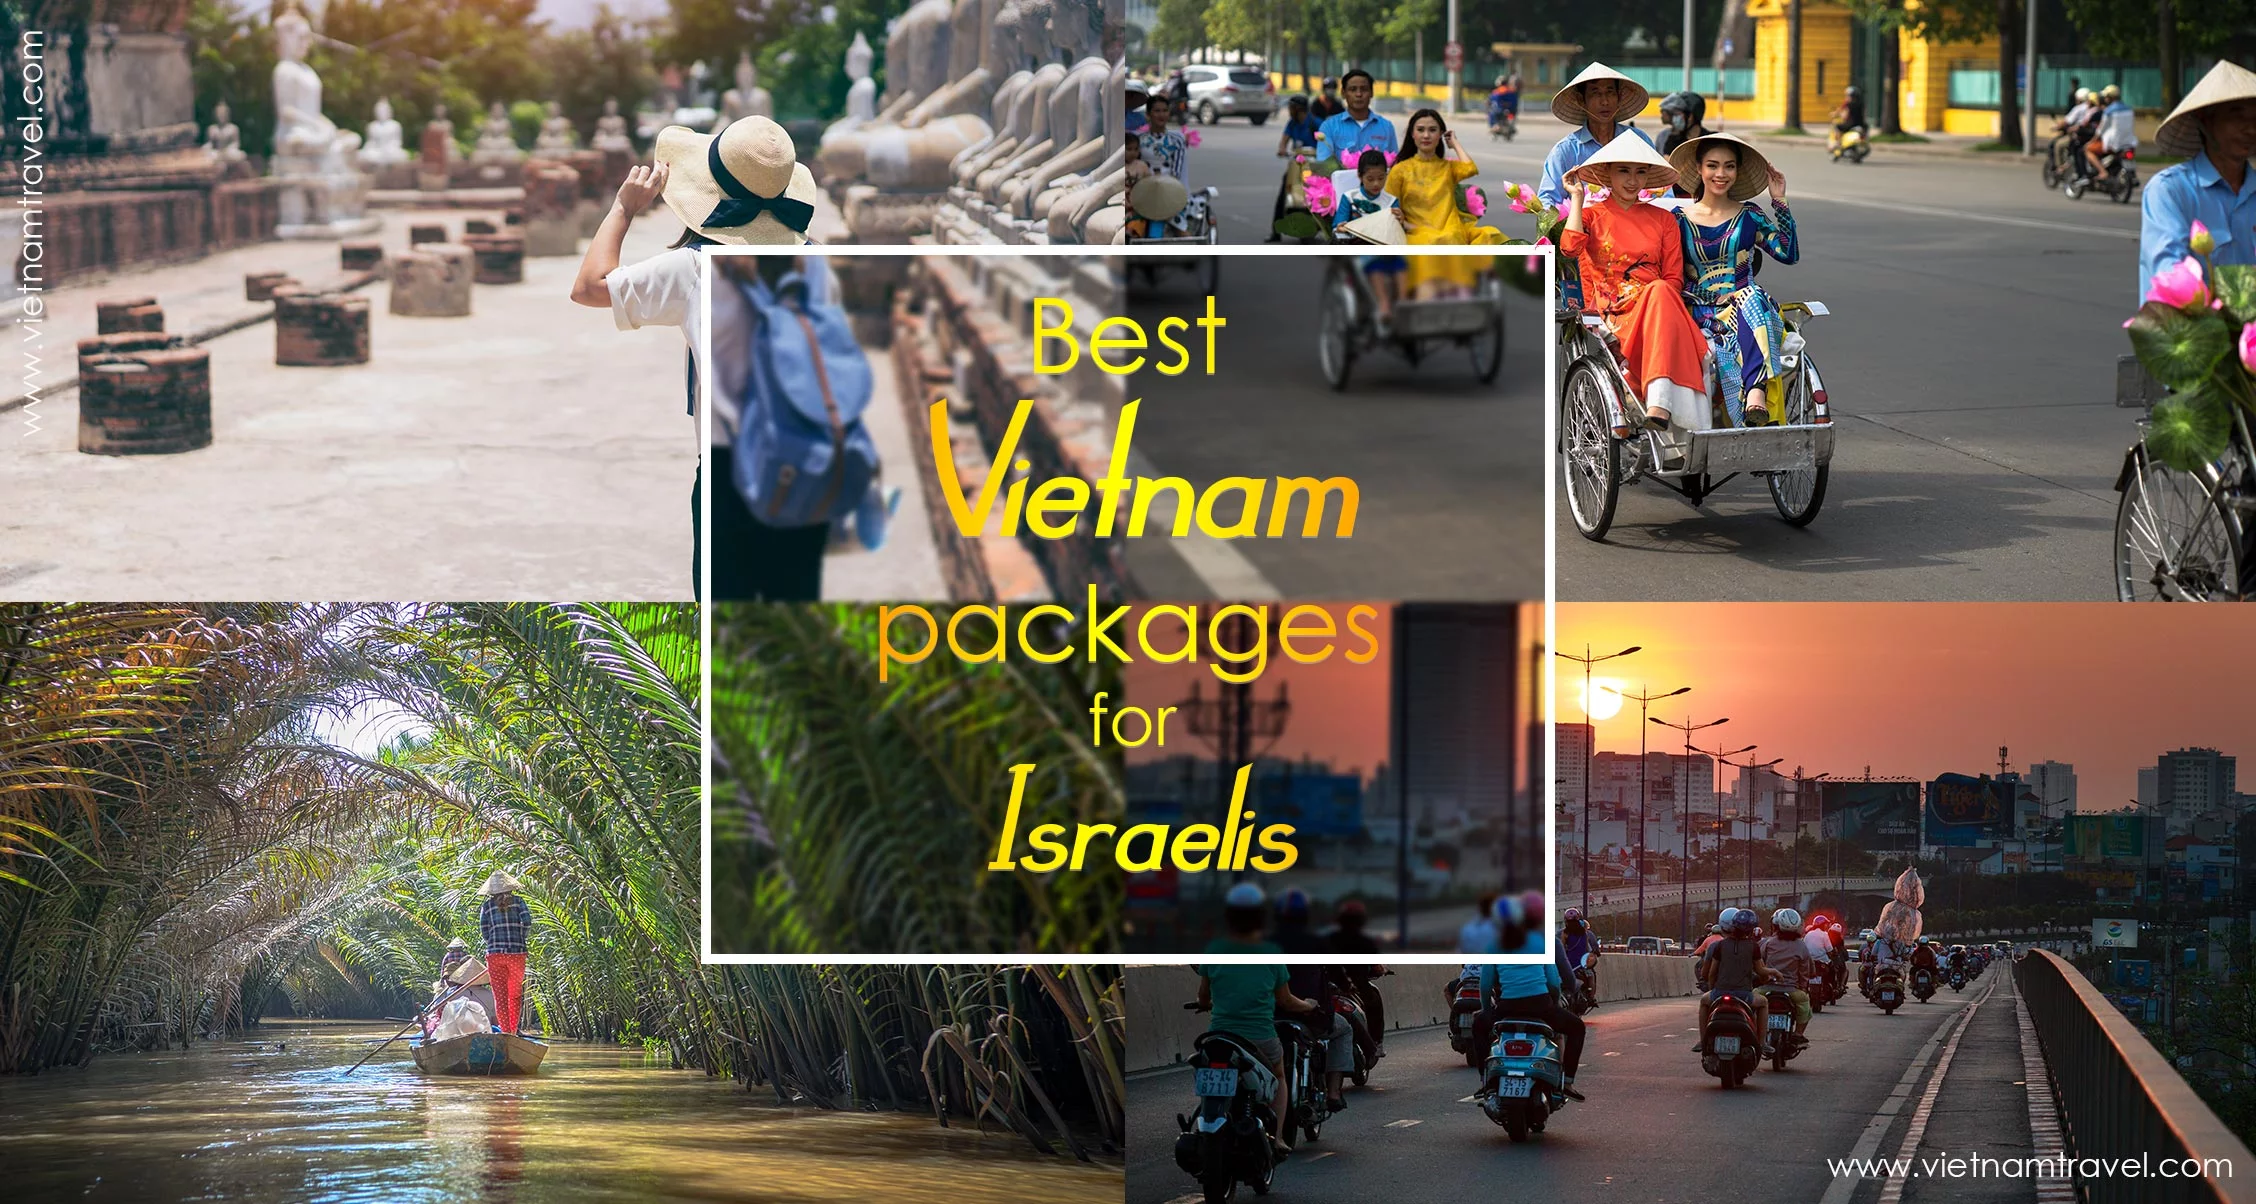 Best Vietnam packages for Israelis